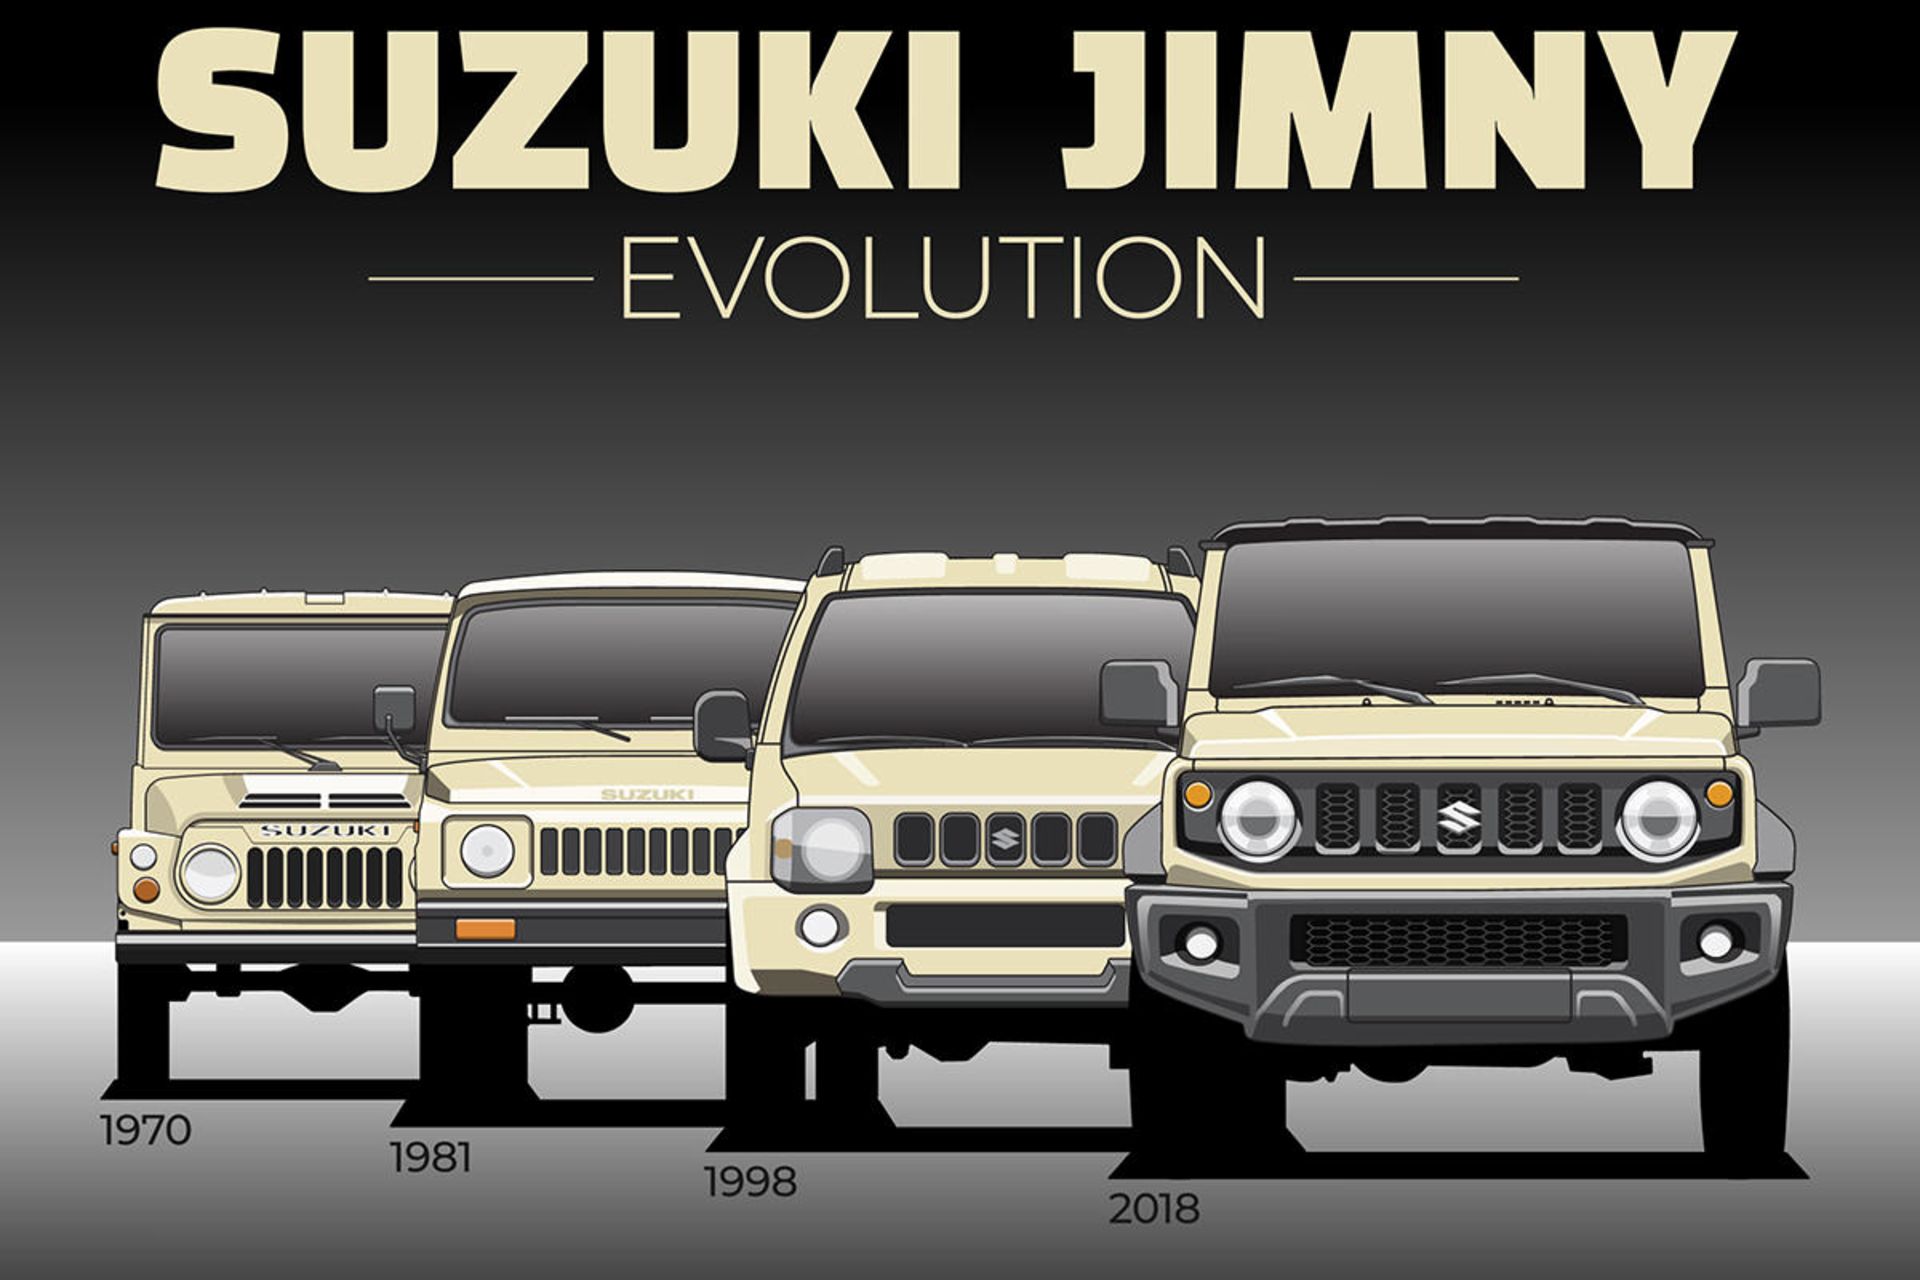 تغییر نسل خودرو سوزوکی جیمنی / Suzuki Jimny evolution